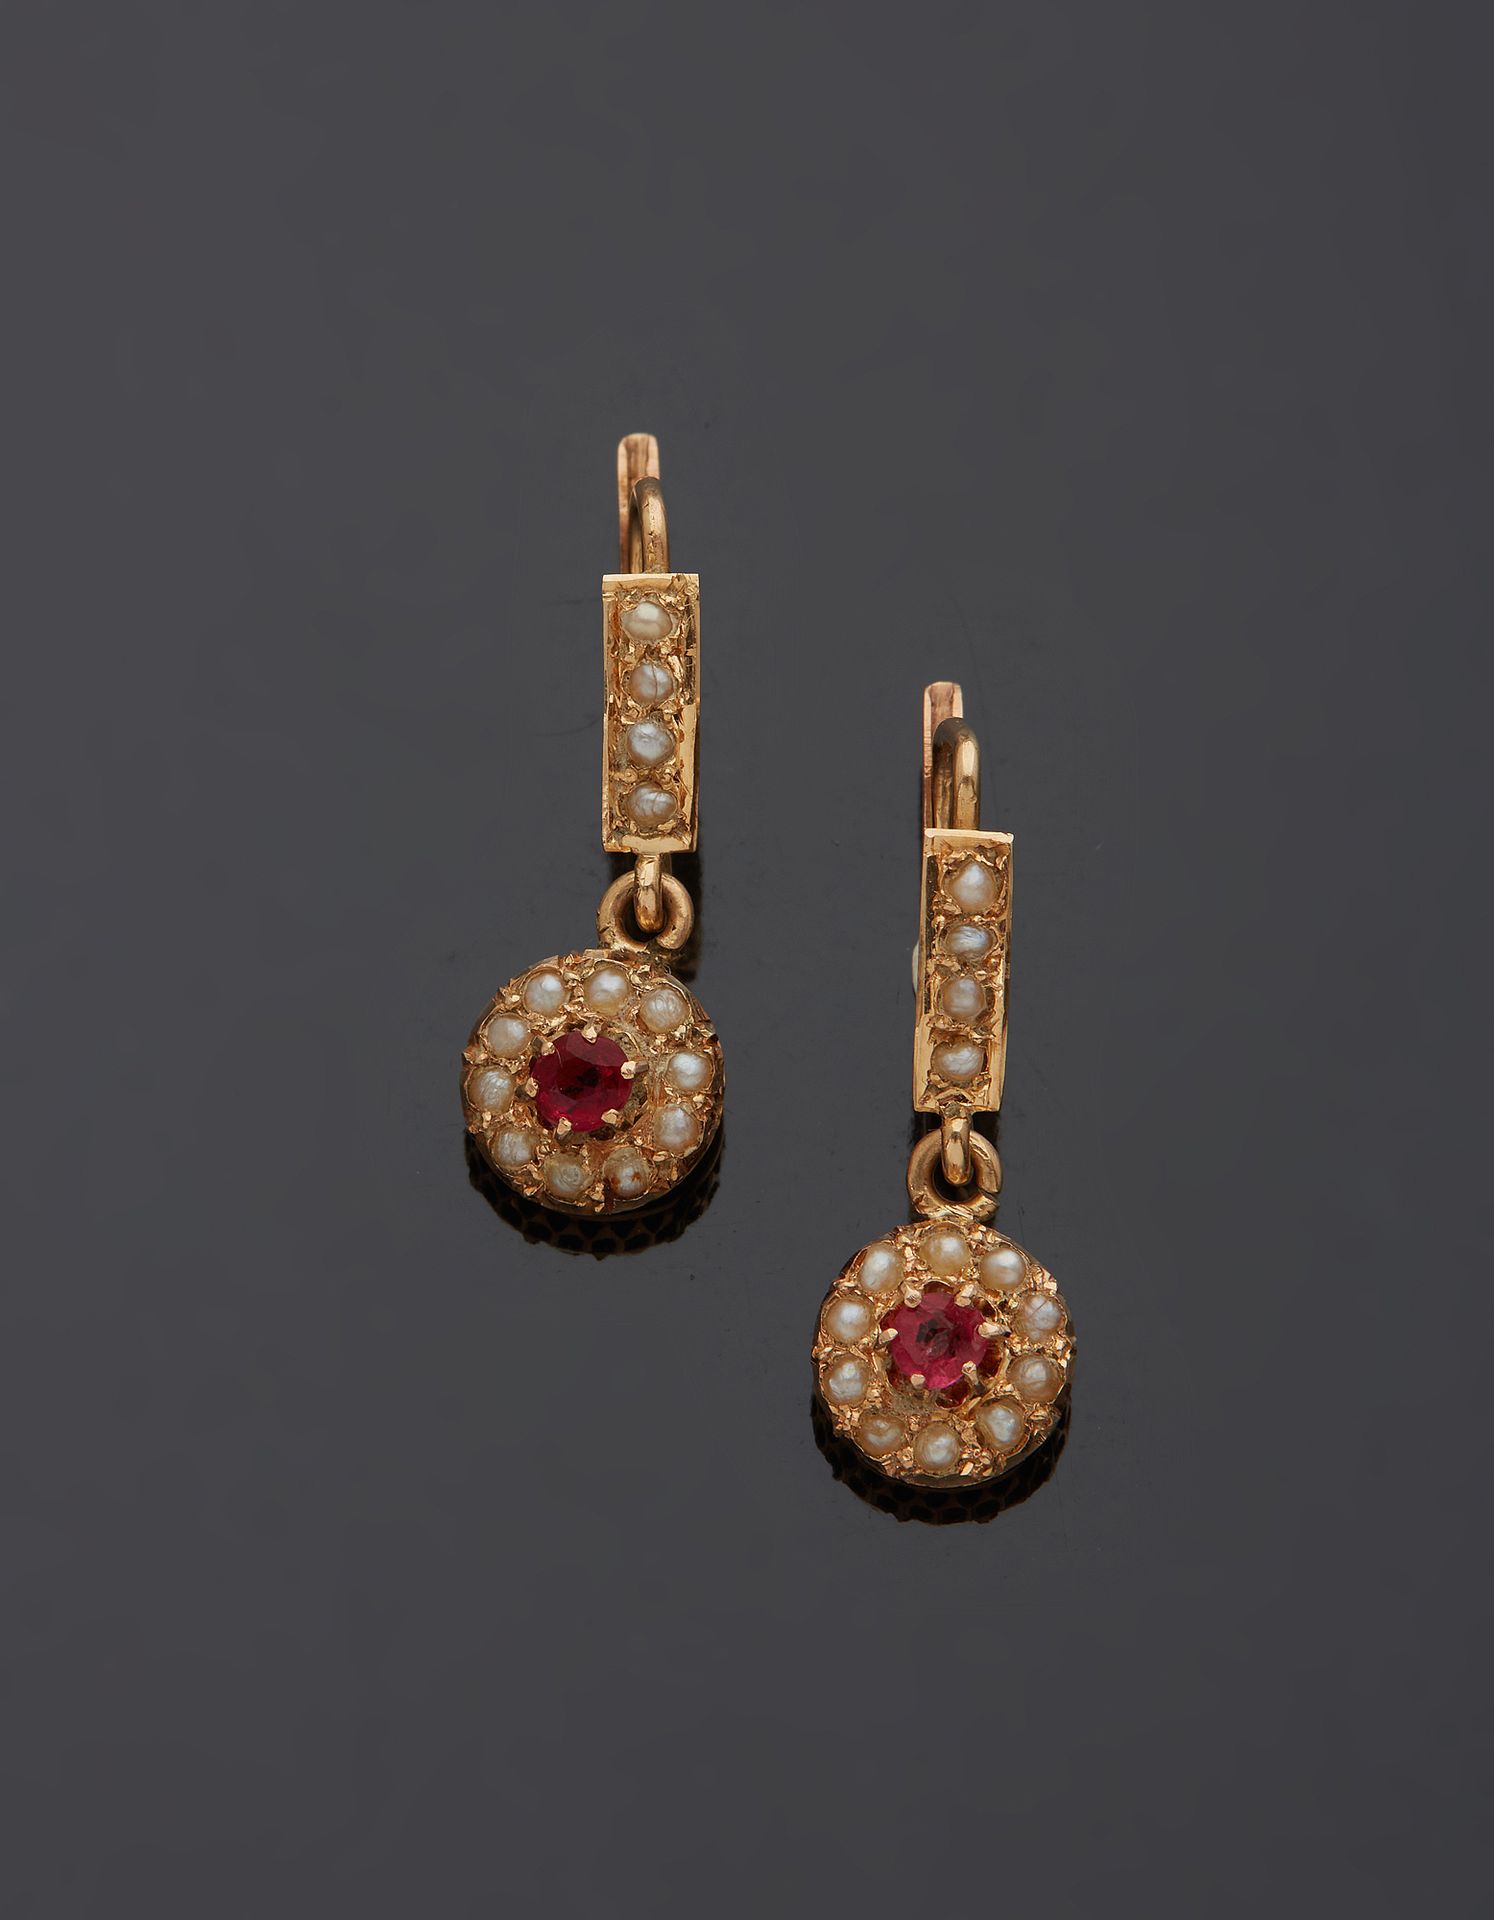 Null 一对18K黄金750‰的悬吊式卧蚕耳环，镶嵌着一颗红宝石和半颗珍珠。

H.2.20 cm 毛重 1.80 g